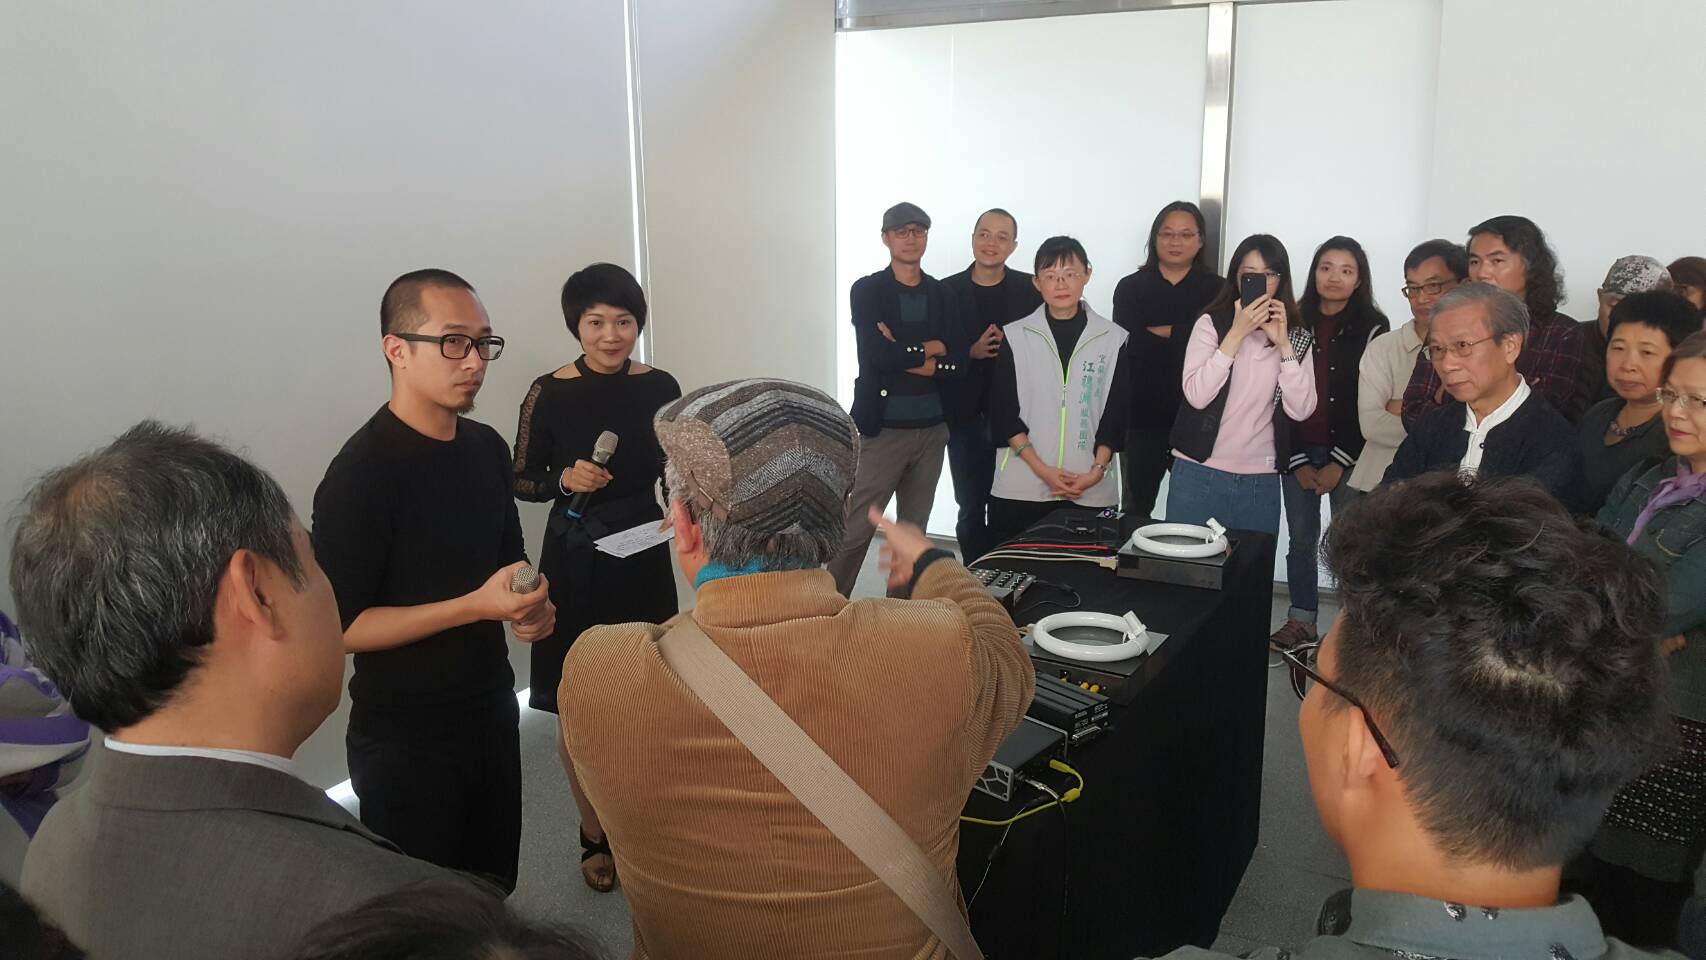 集聲光、視覺、聽覺及音樂雷射科技 藝術家姚仲涵在文化工場展出